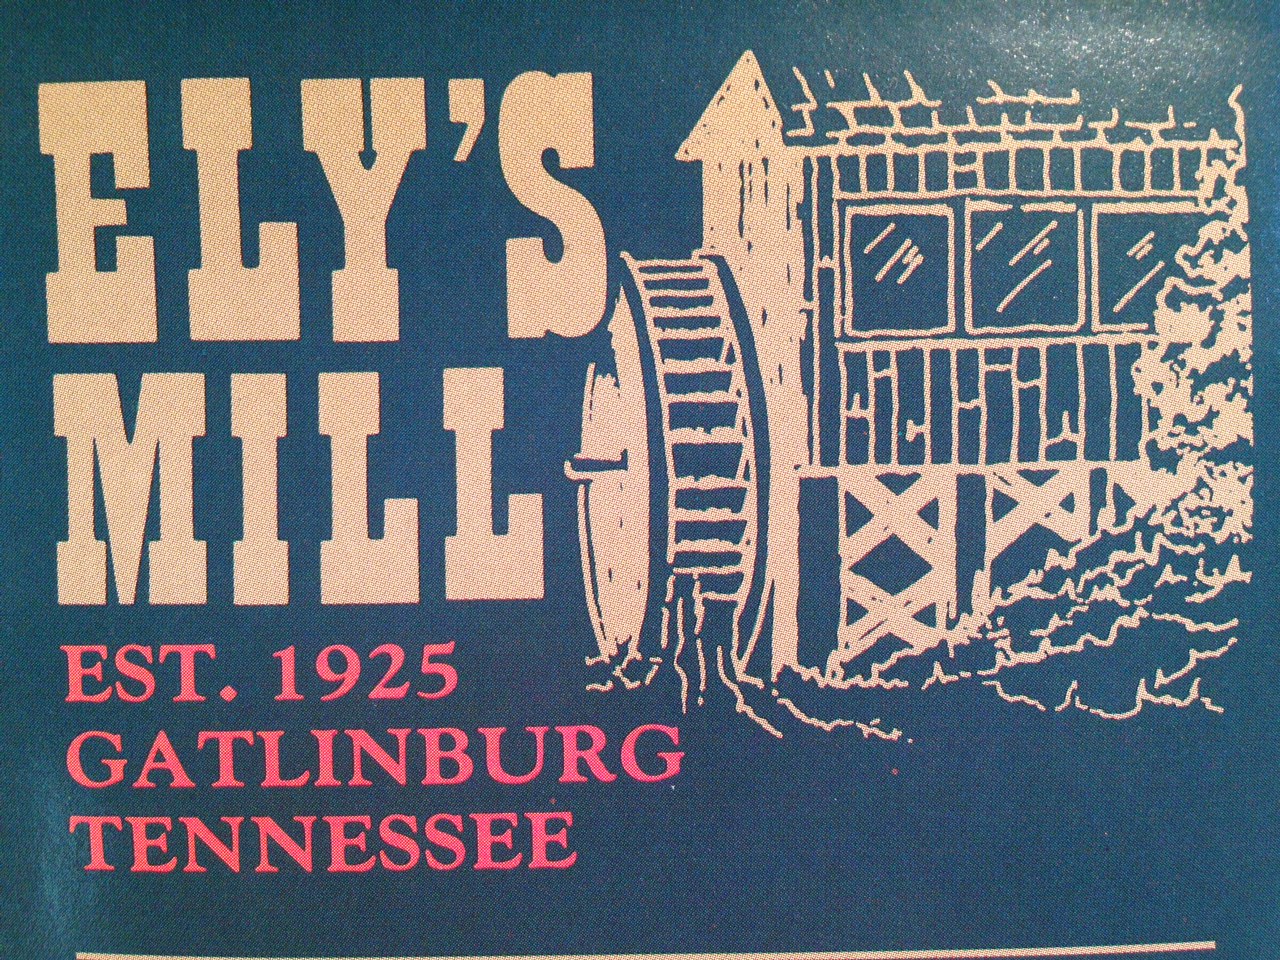 Elys Mill